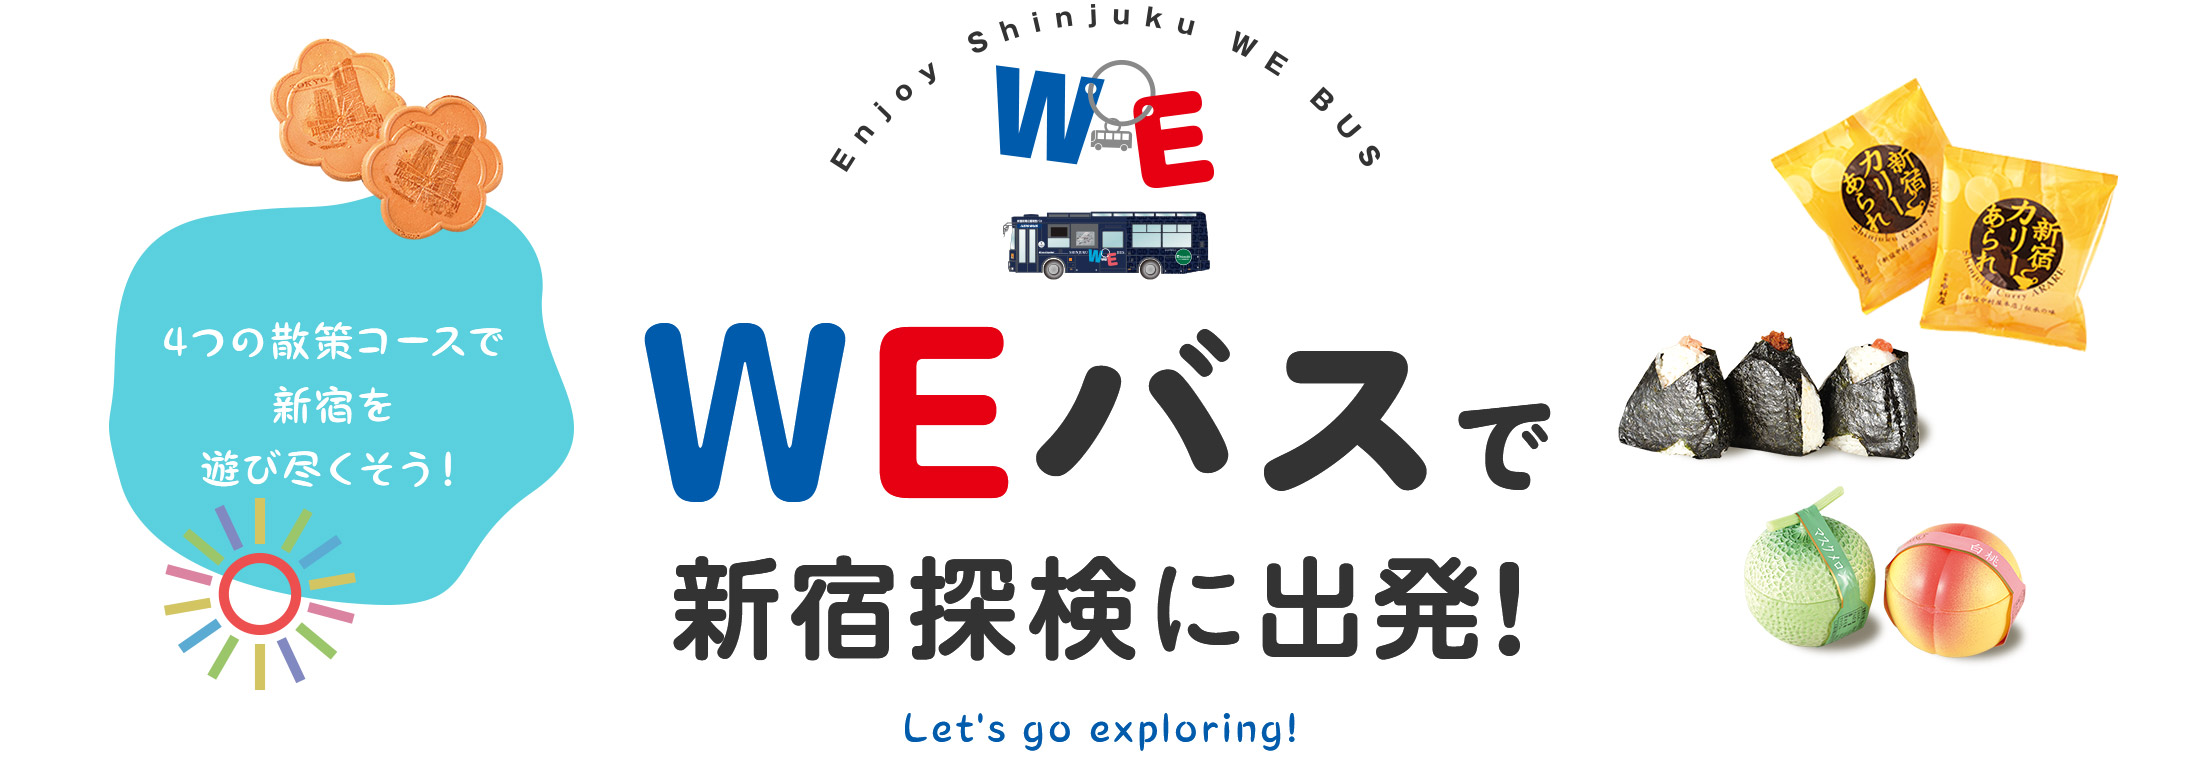 4つの散策コースで新宿を遊び尽くそう！ WEバスで新宿探検に出発！ Let's go exploring!